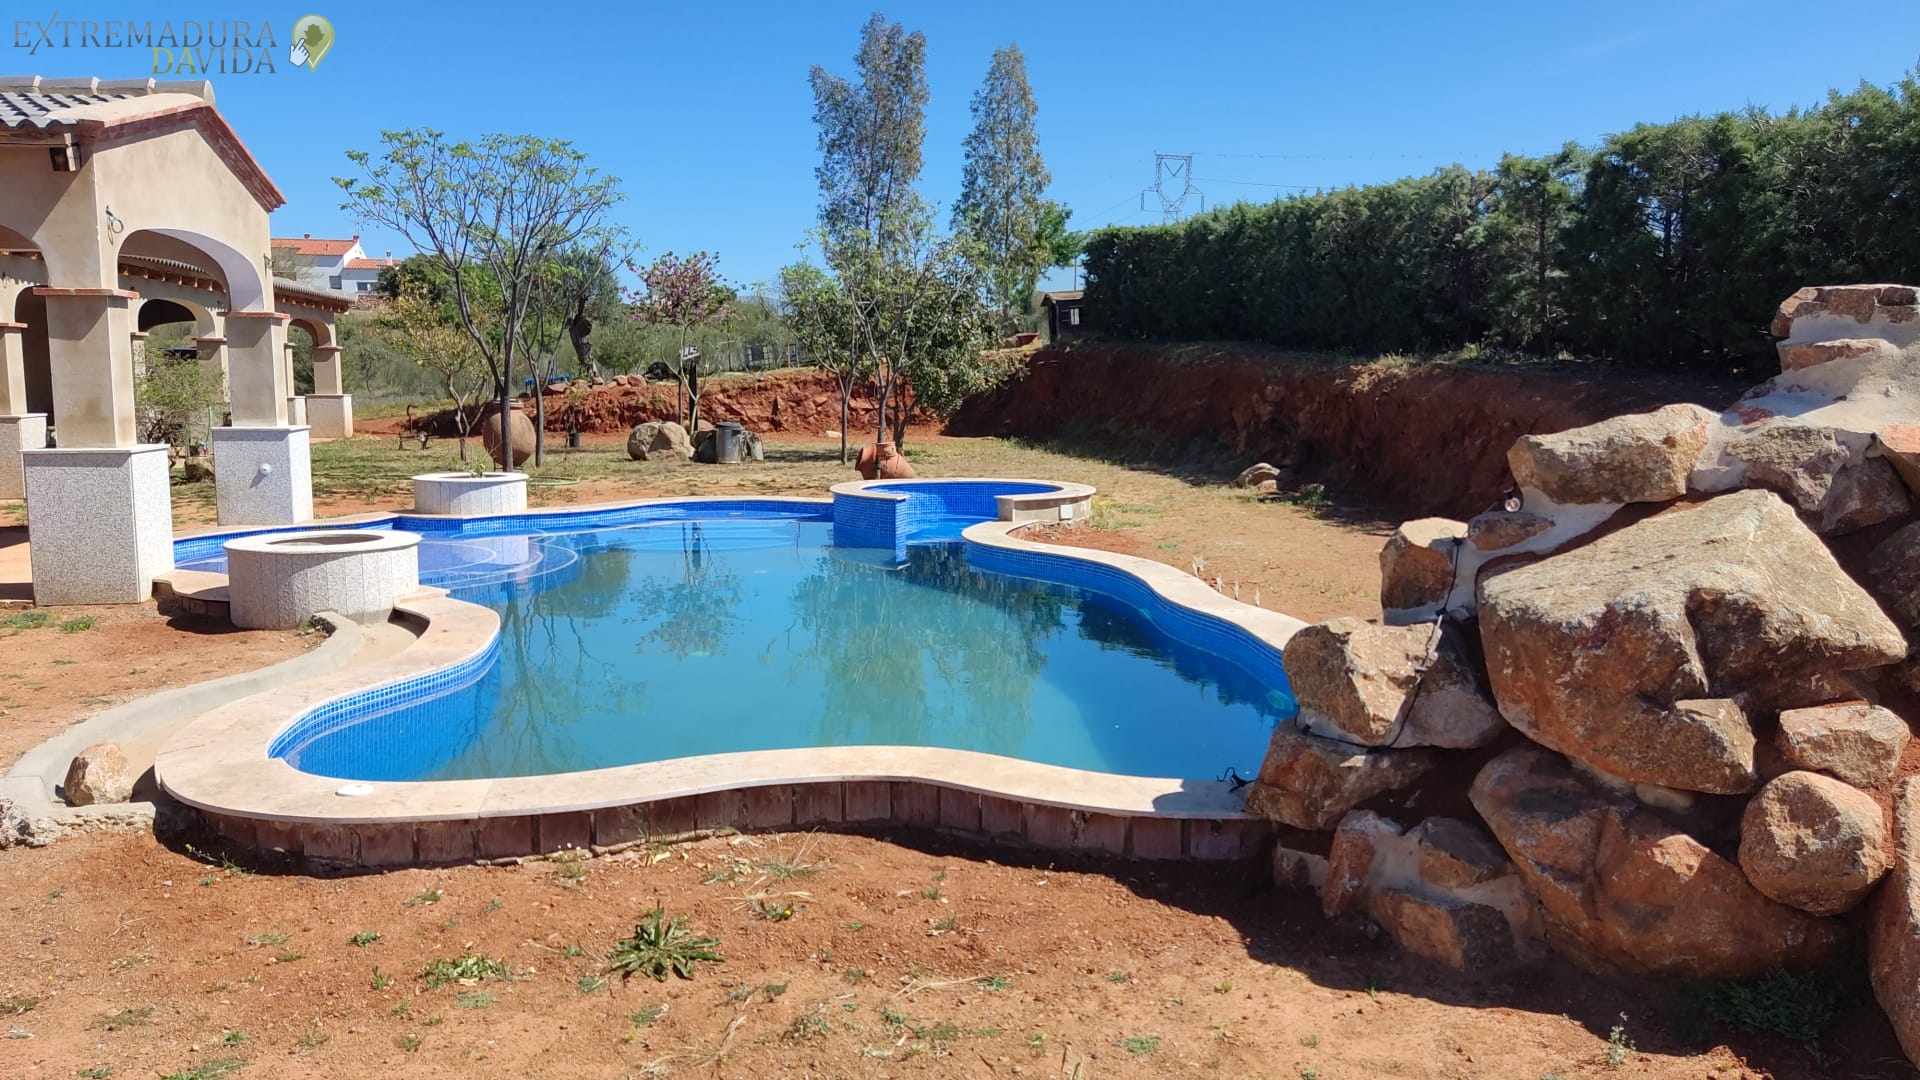 Marmoles Peanas granitos piedras para piscinas Extremadura Extremeña del Granito Mérida Calamonte